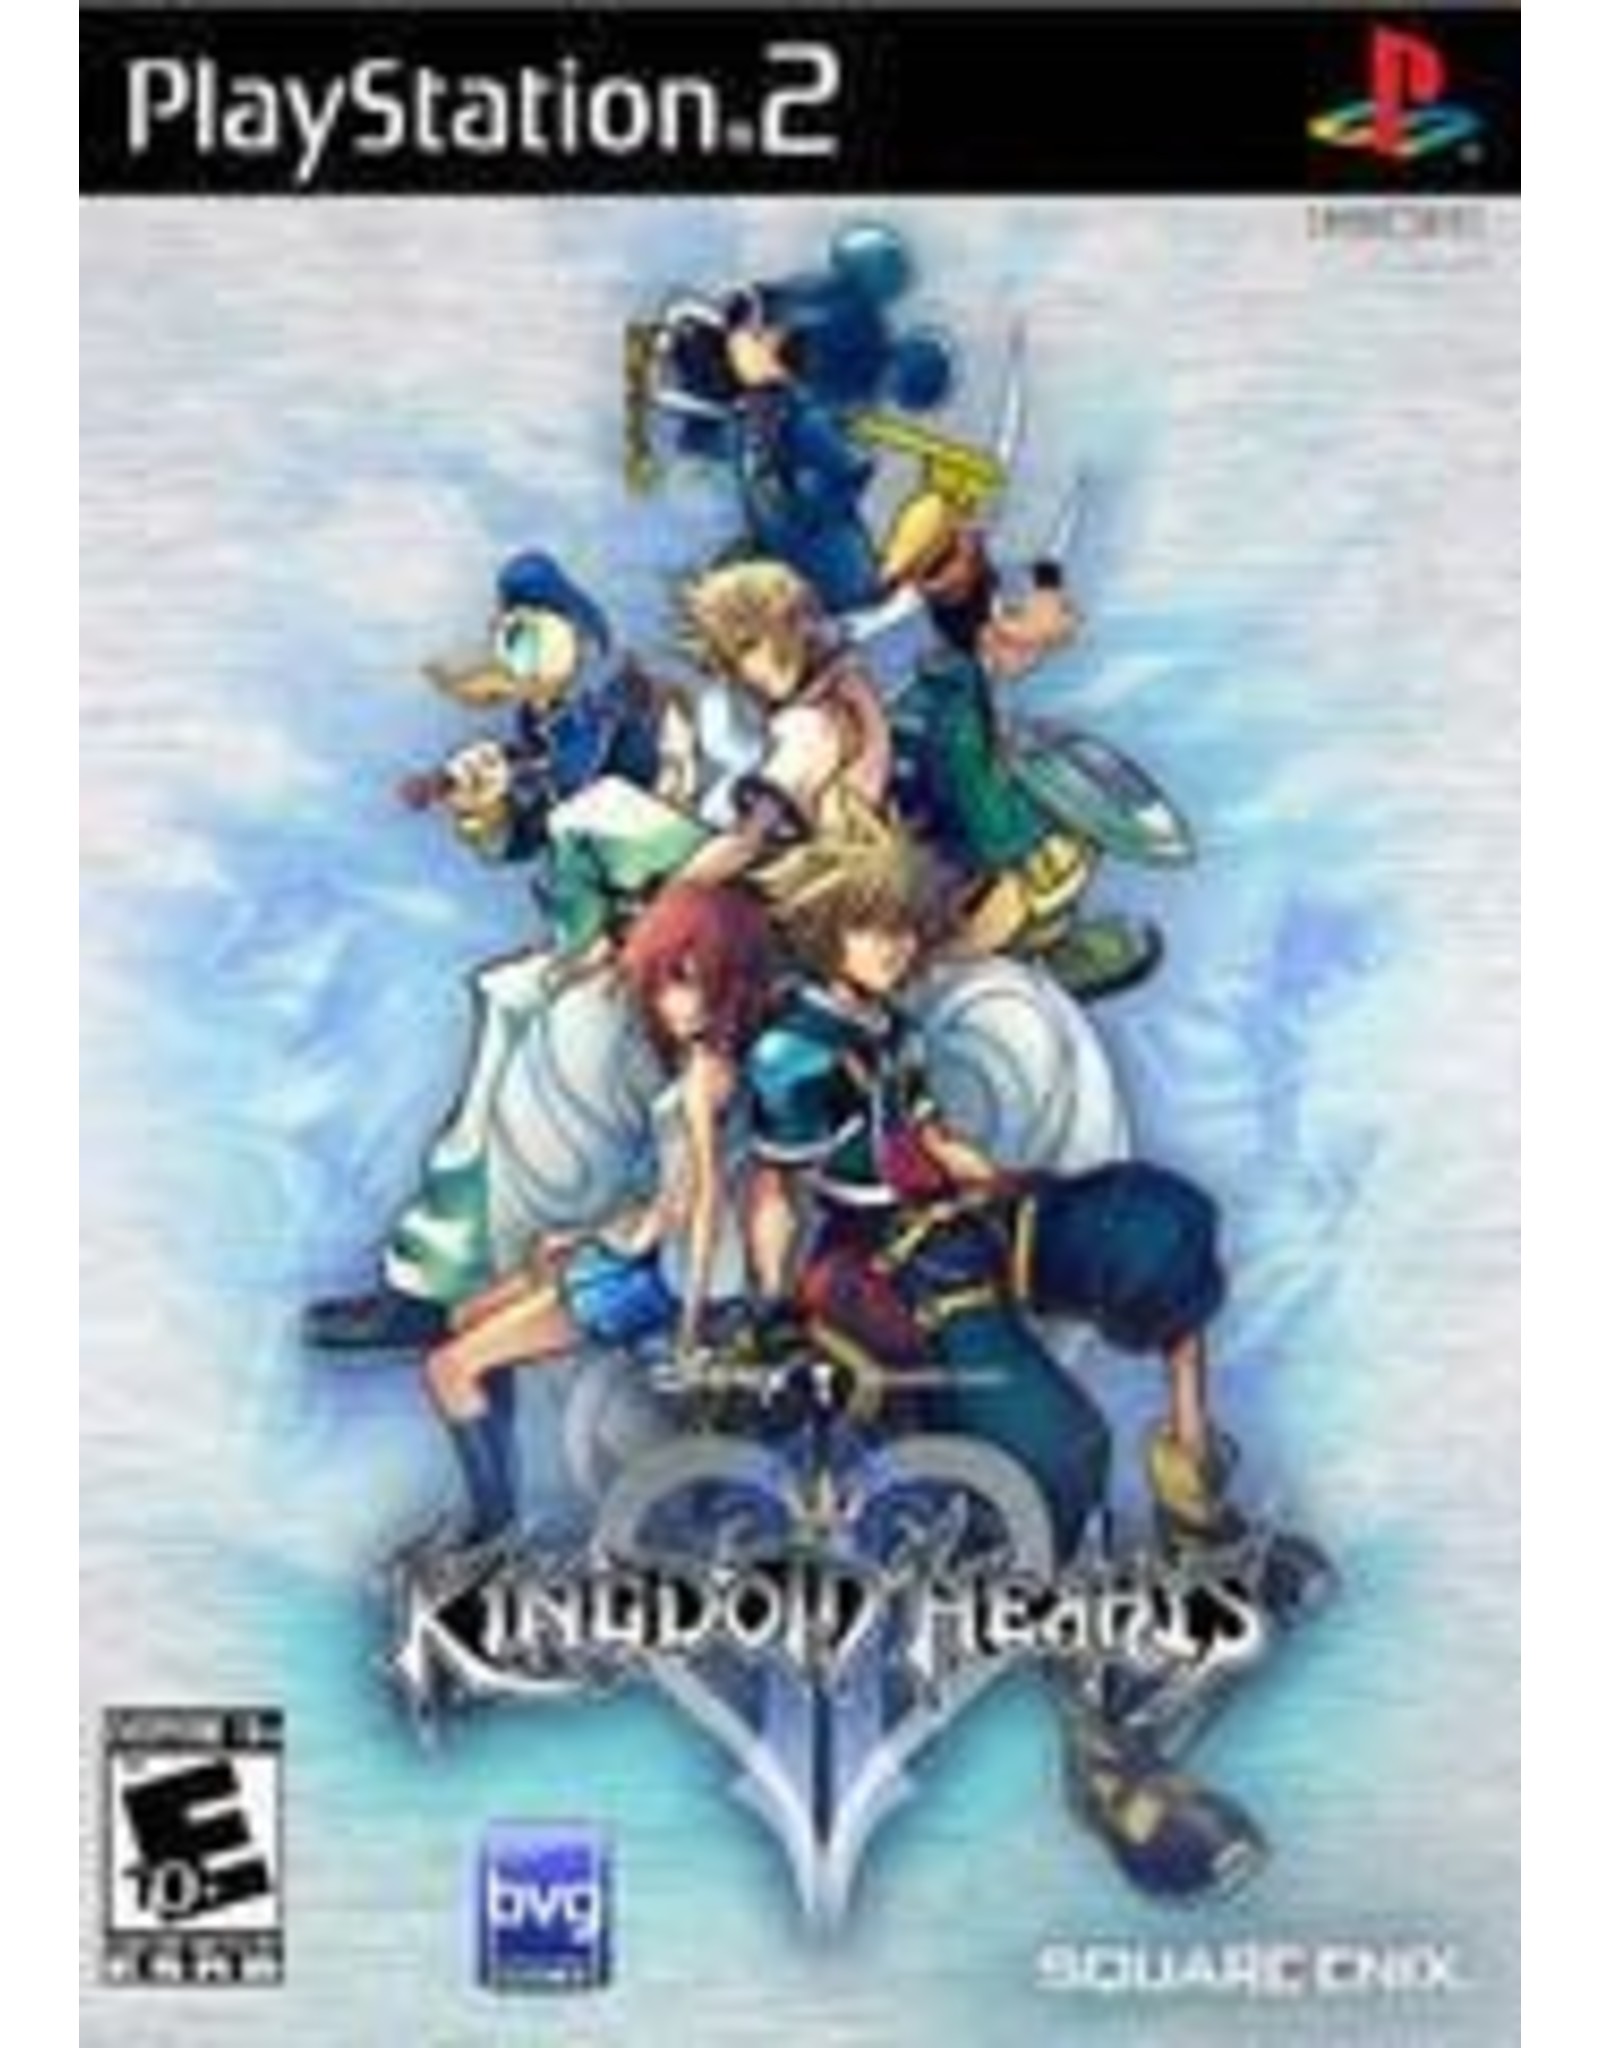 Playstation 2 Kingdom Hearts II (No Manual)